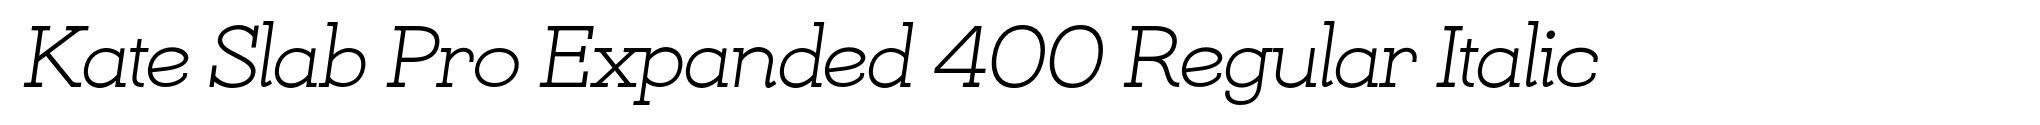 Kate Slab Pro Expanded 400 Regular Italic image